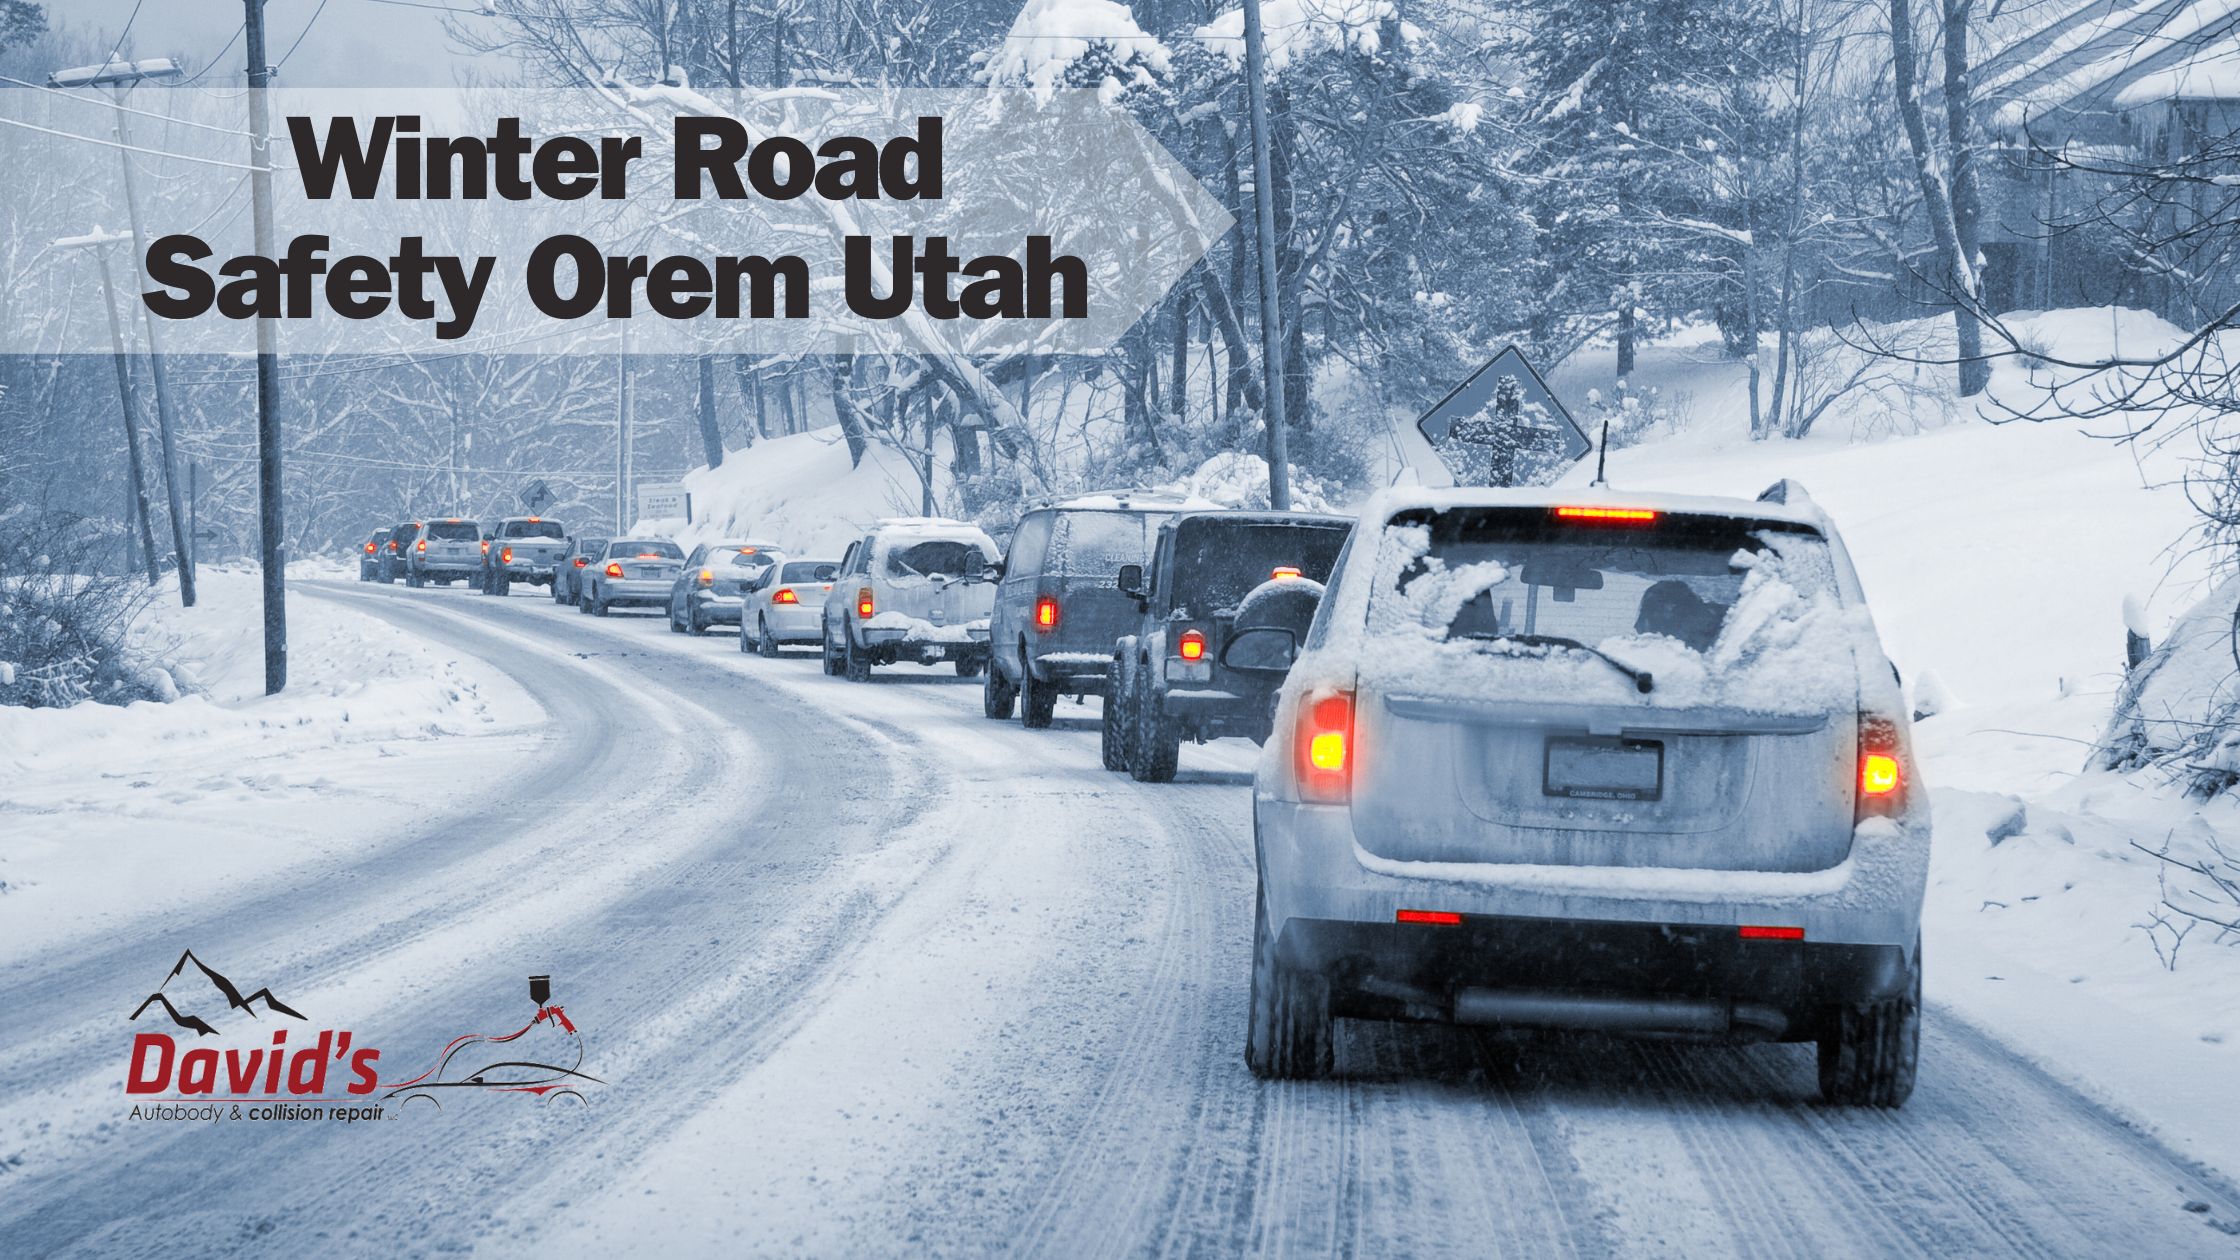 Winter Road Safety Orem Utah